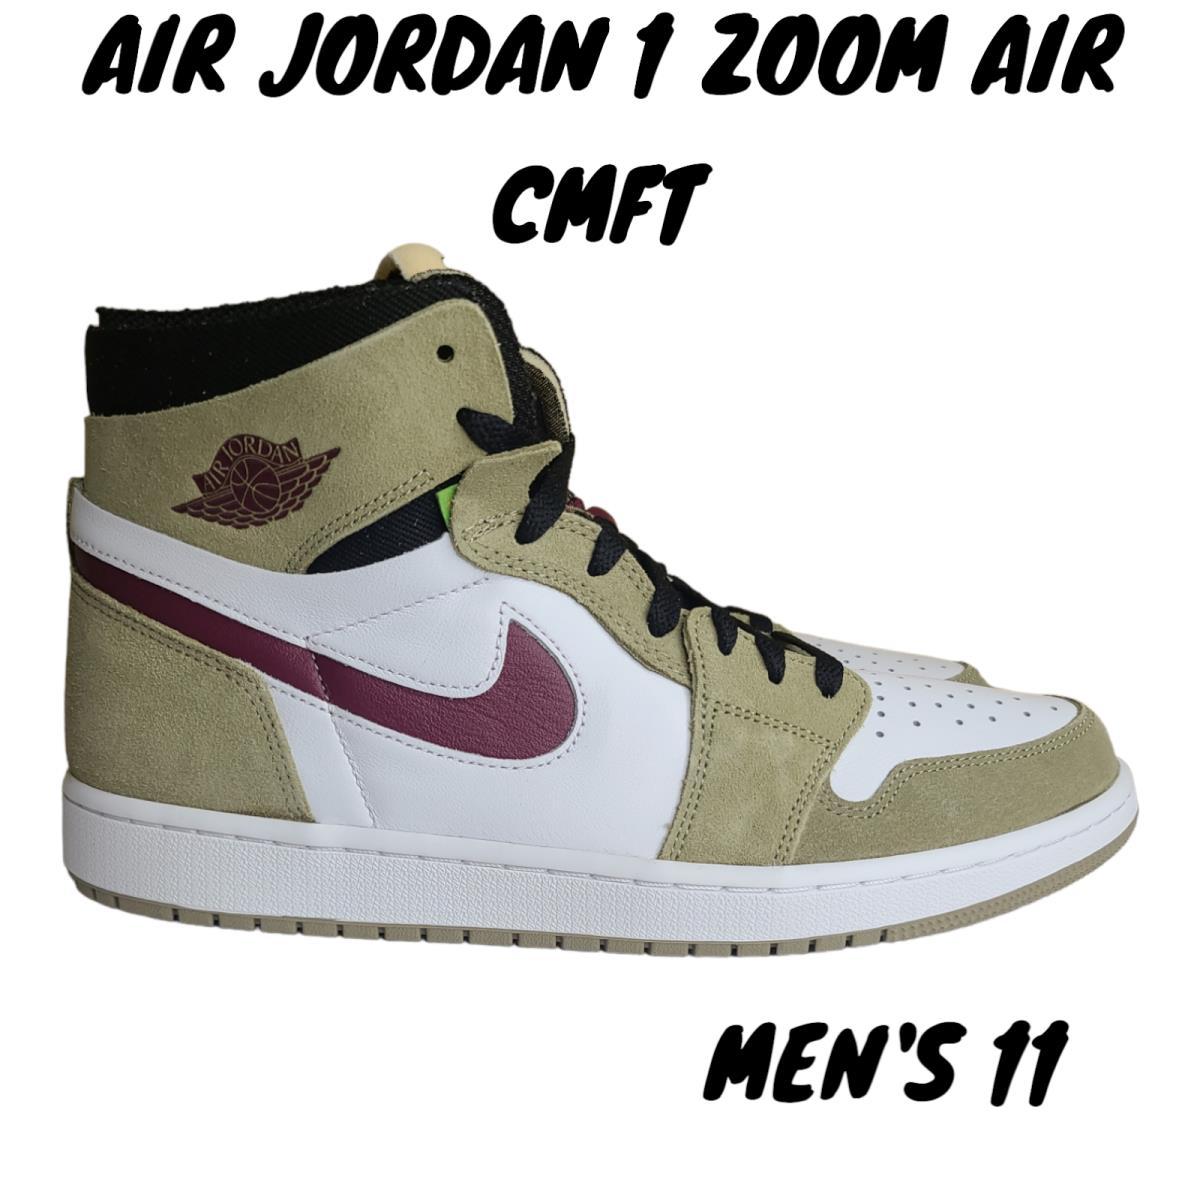 Nike Air Jordan 1 Zoom Air Cmft Shoe Sneakers Mens Size 11 CT0978 203 Olive - Green